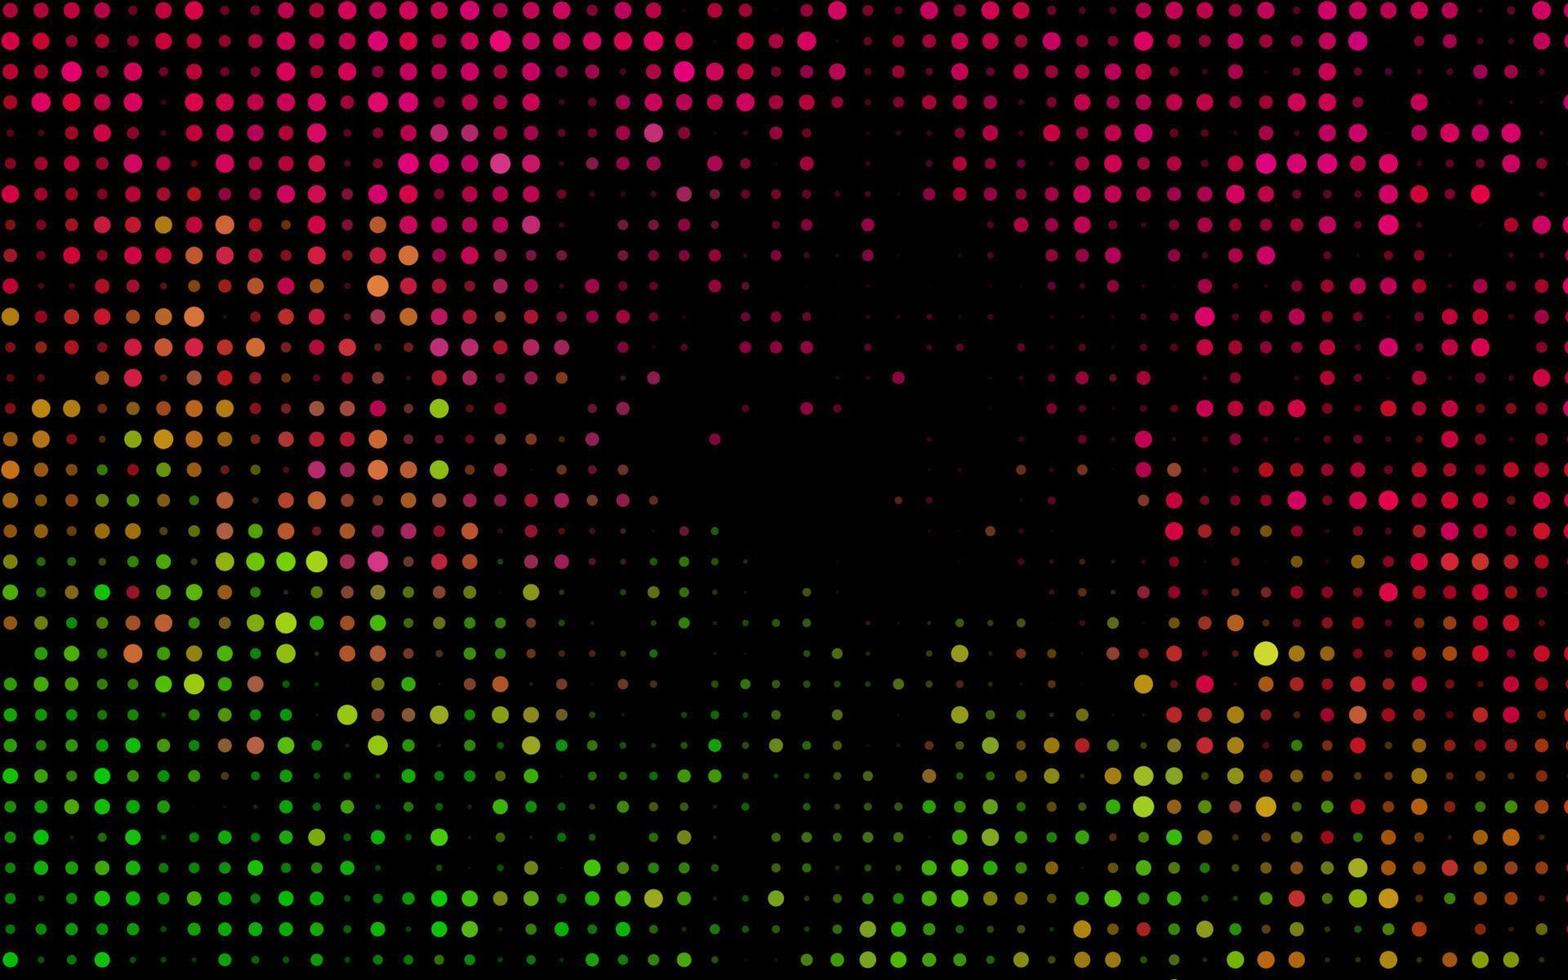 patrón de vector de color rosa oscuro, verde con esferas.